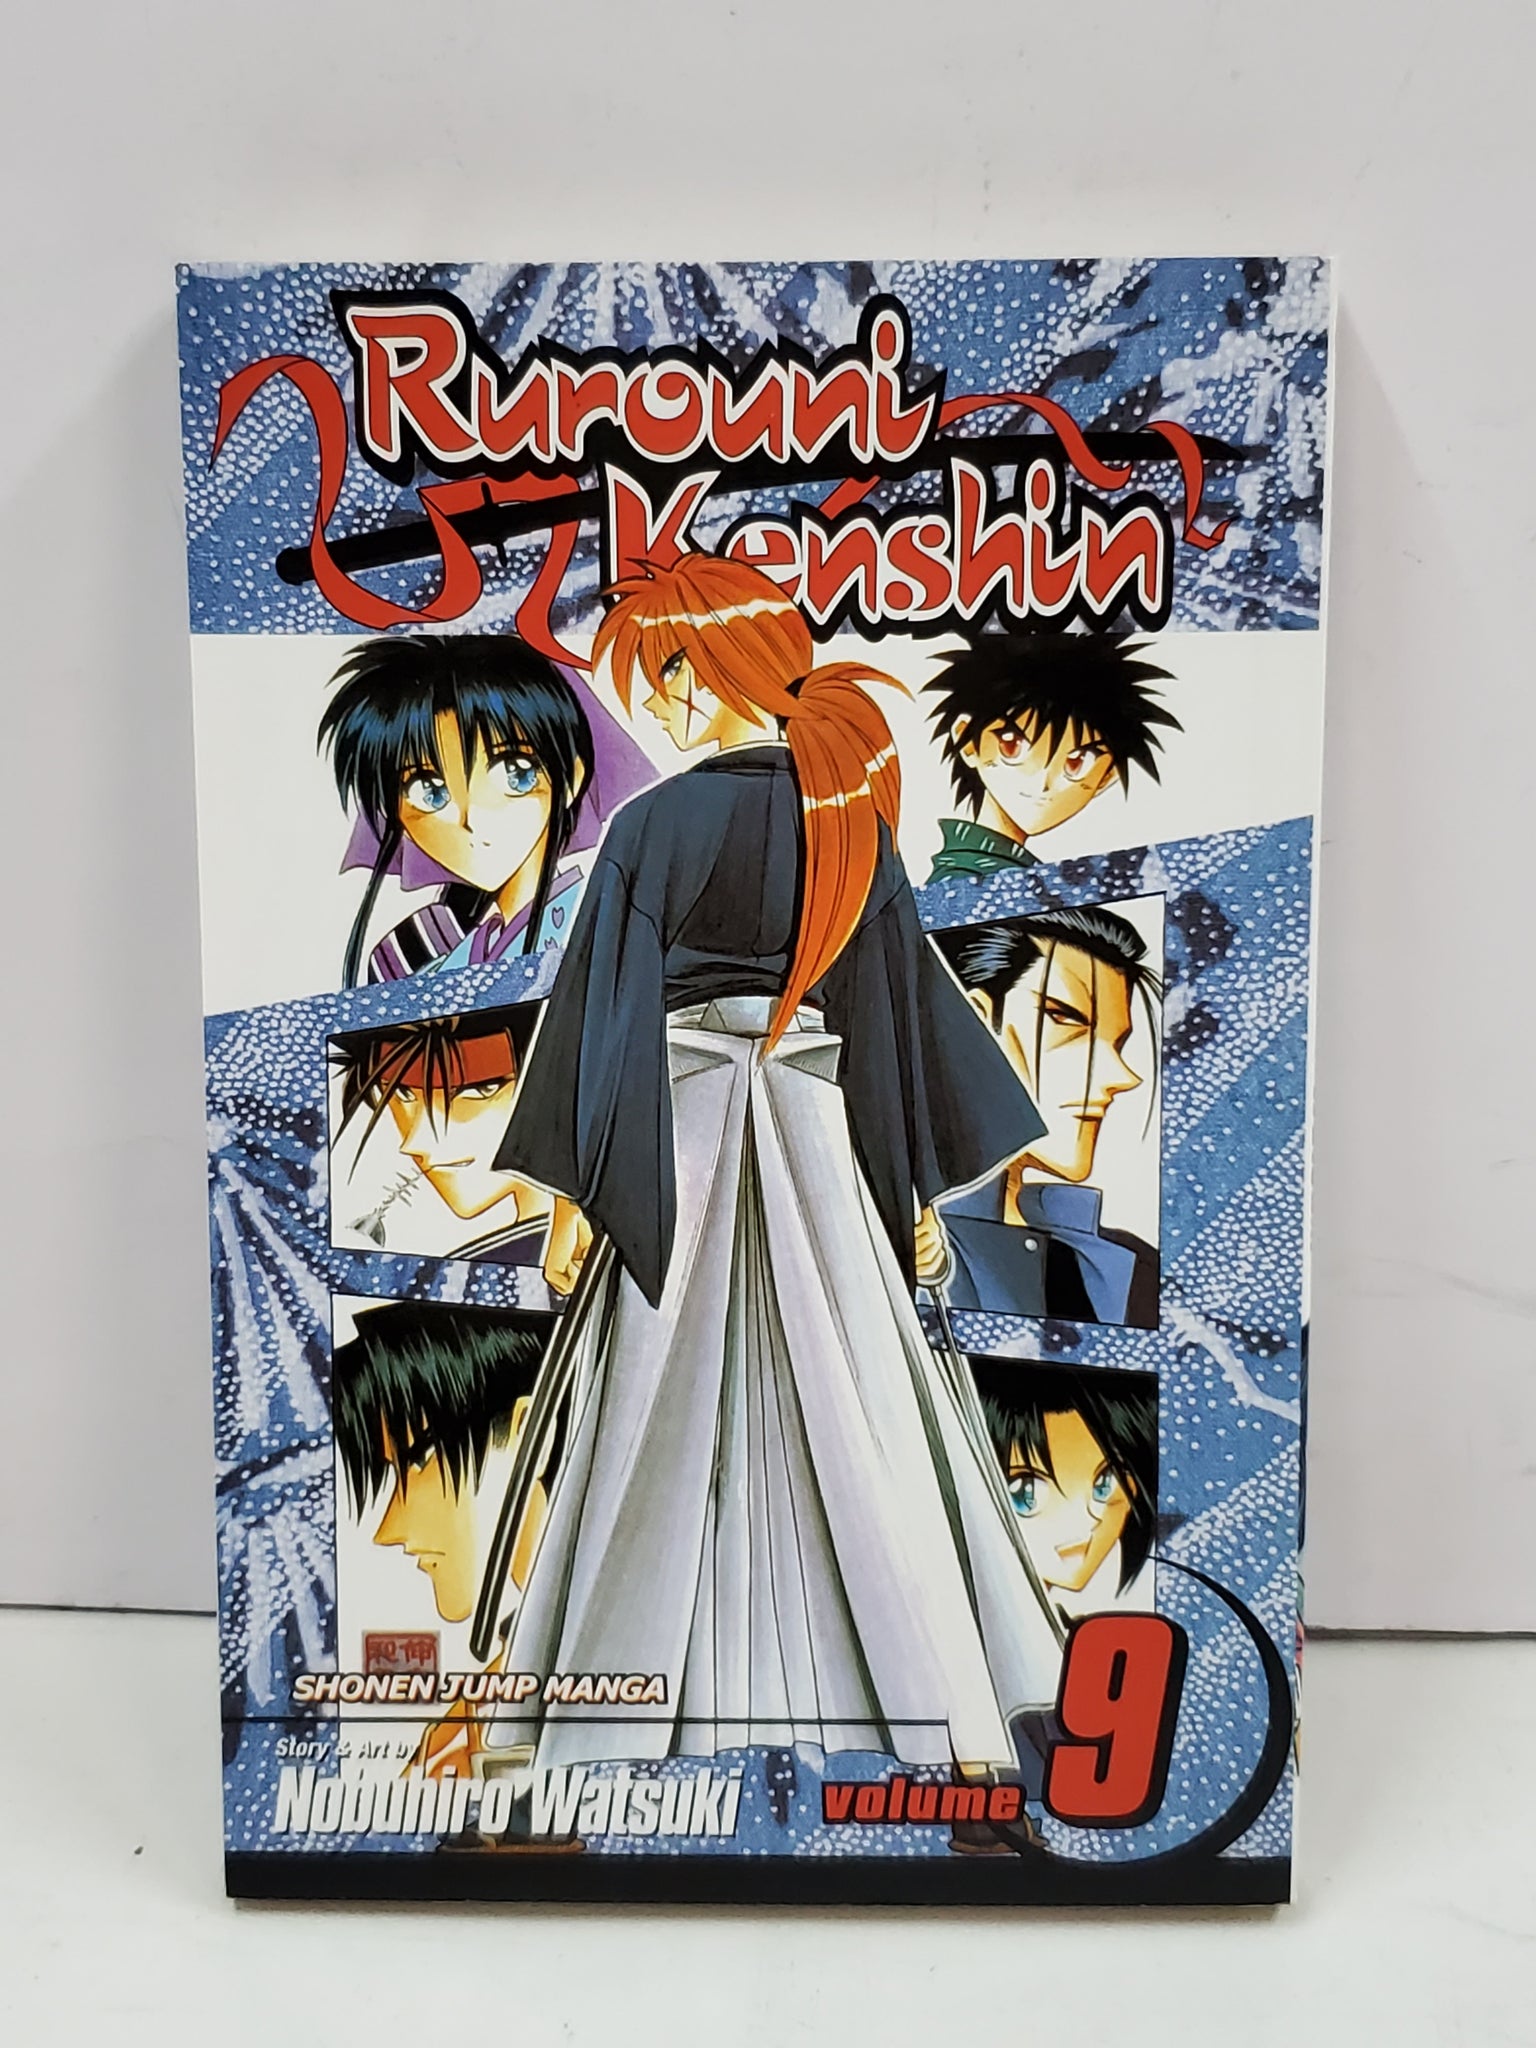 Rurouni Kenshin, Vol 9